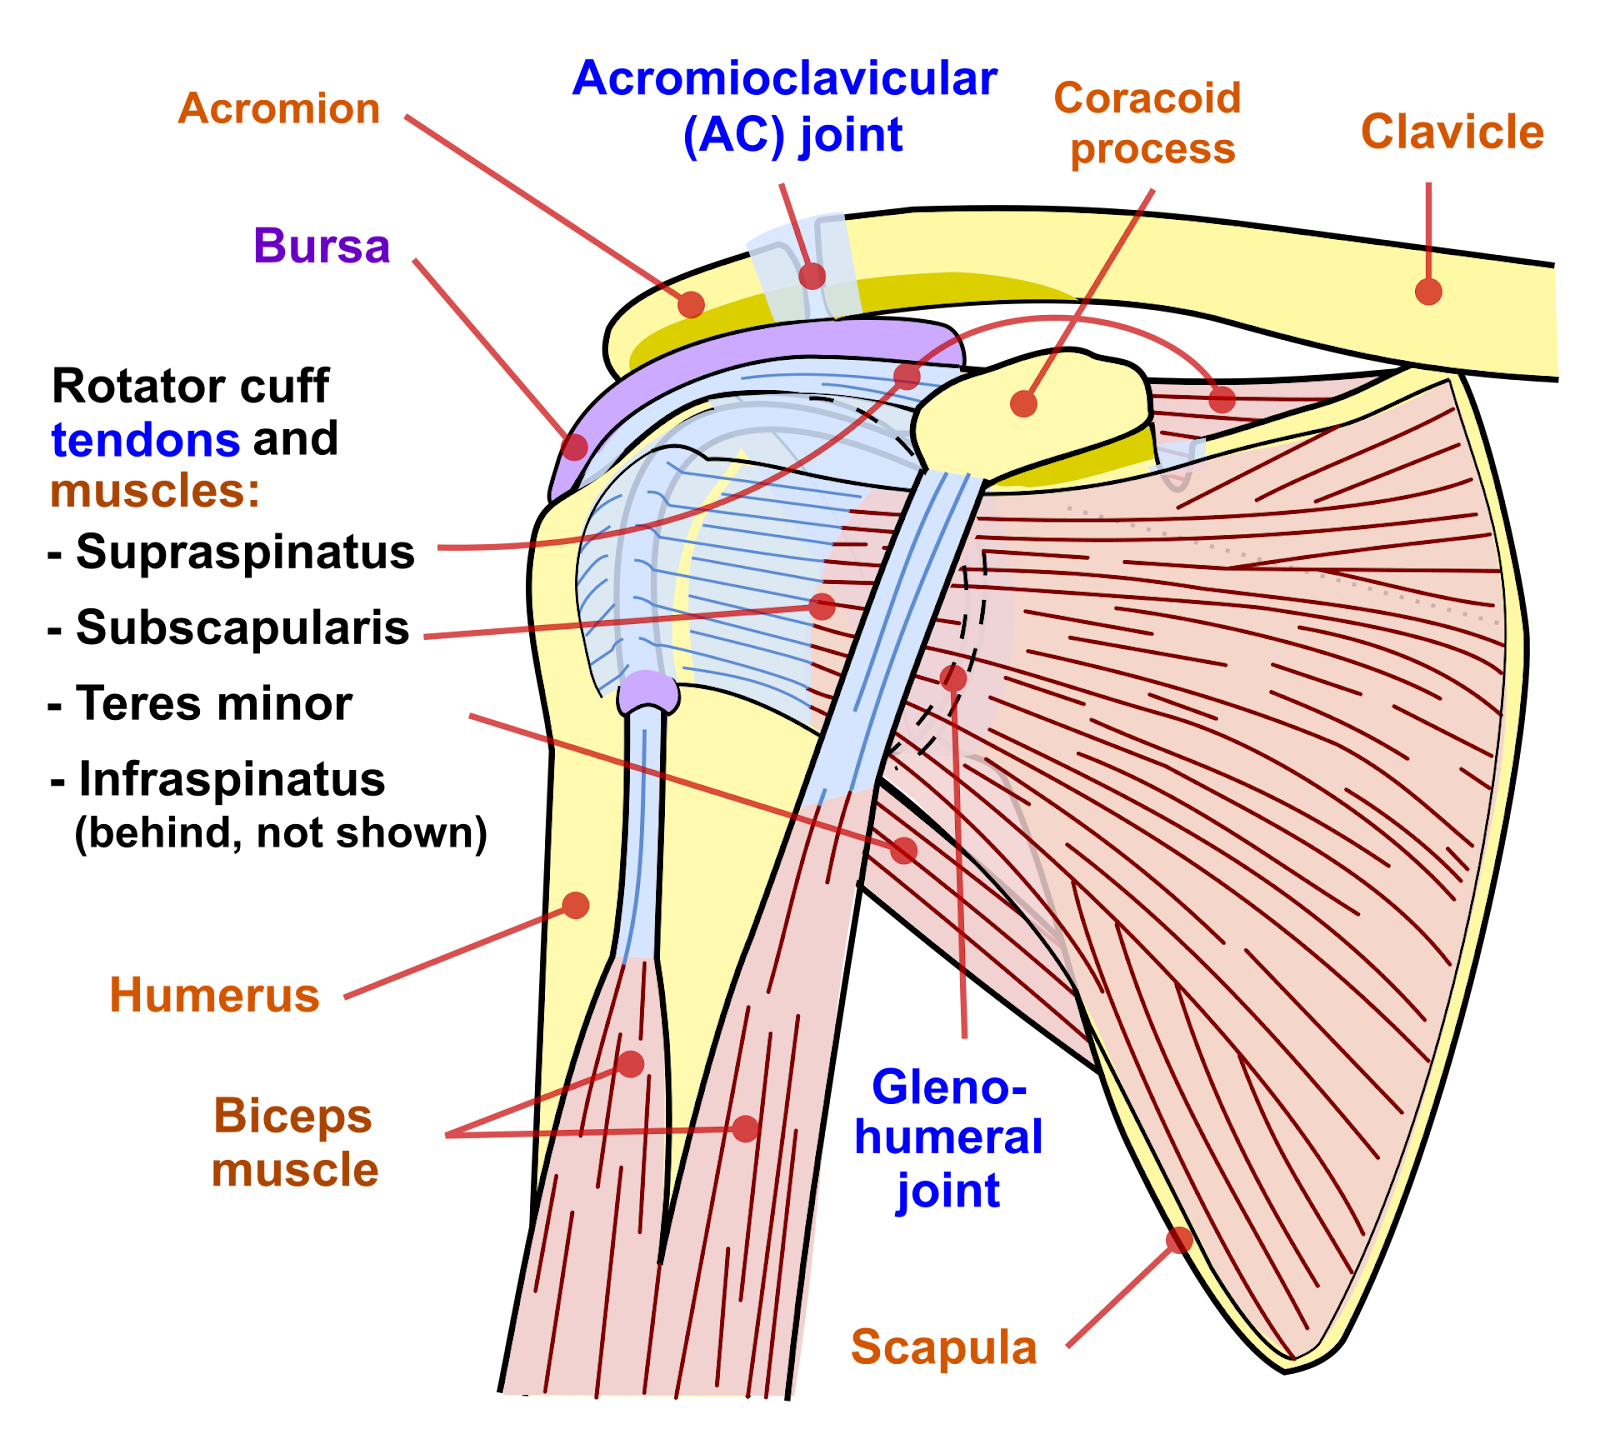 rotator cuff muscles